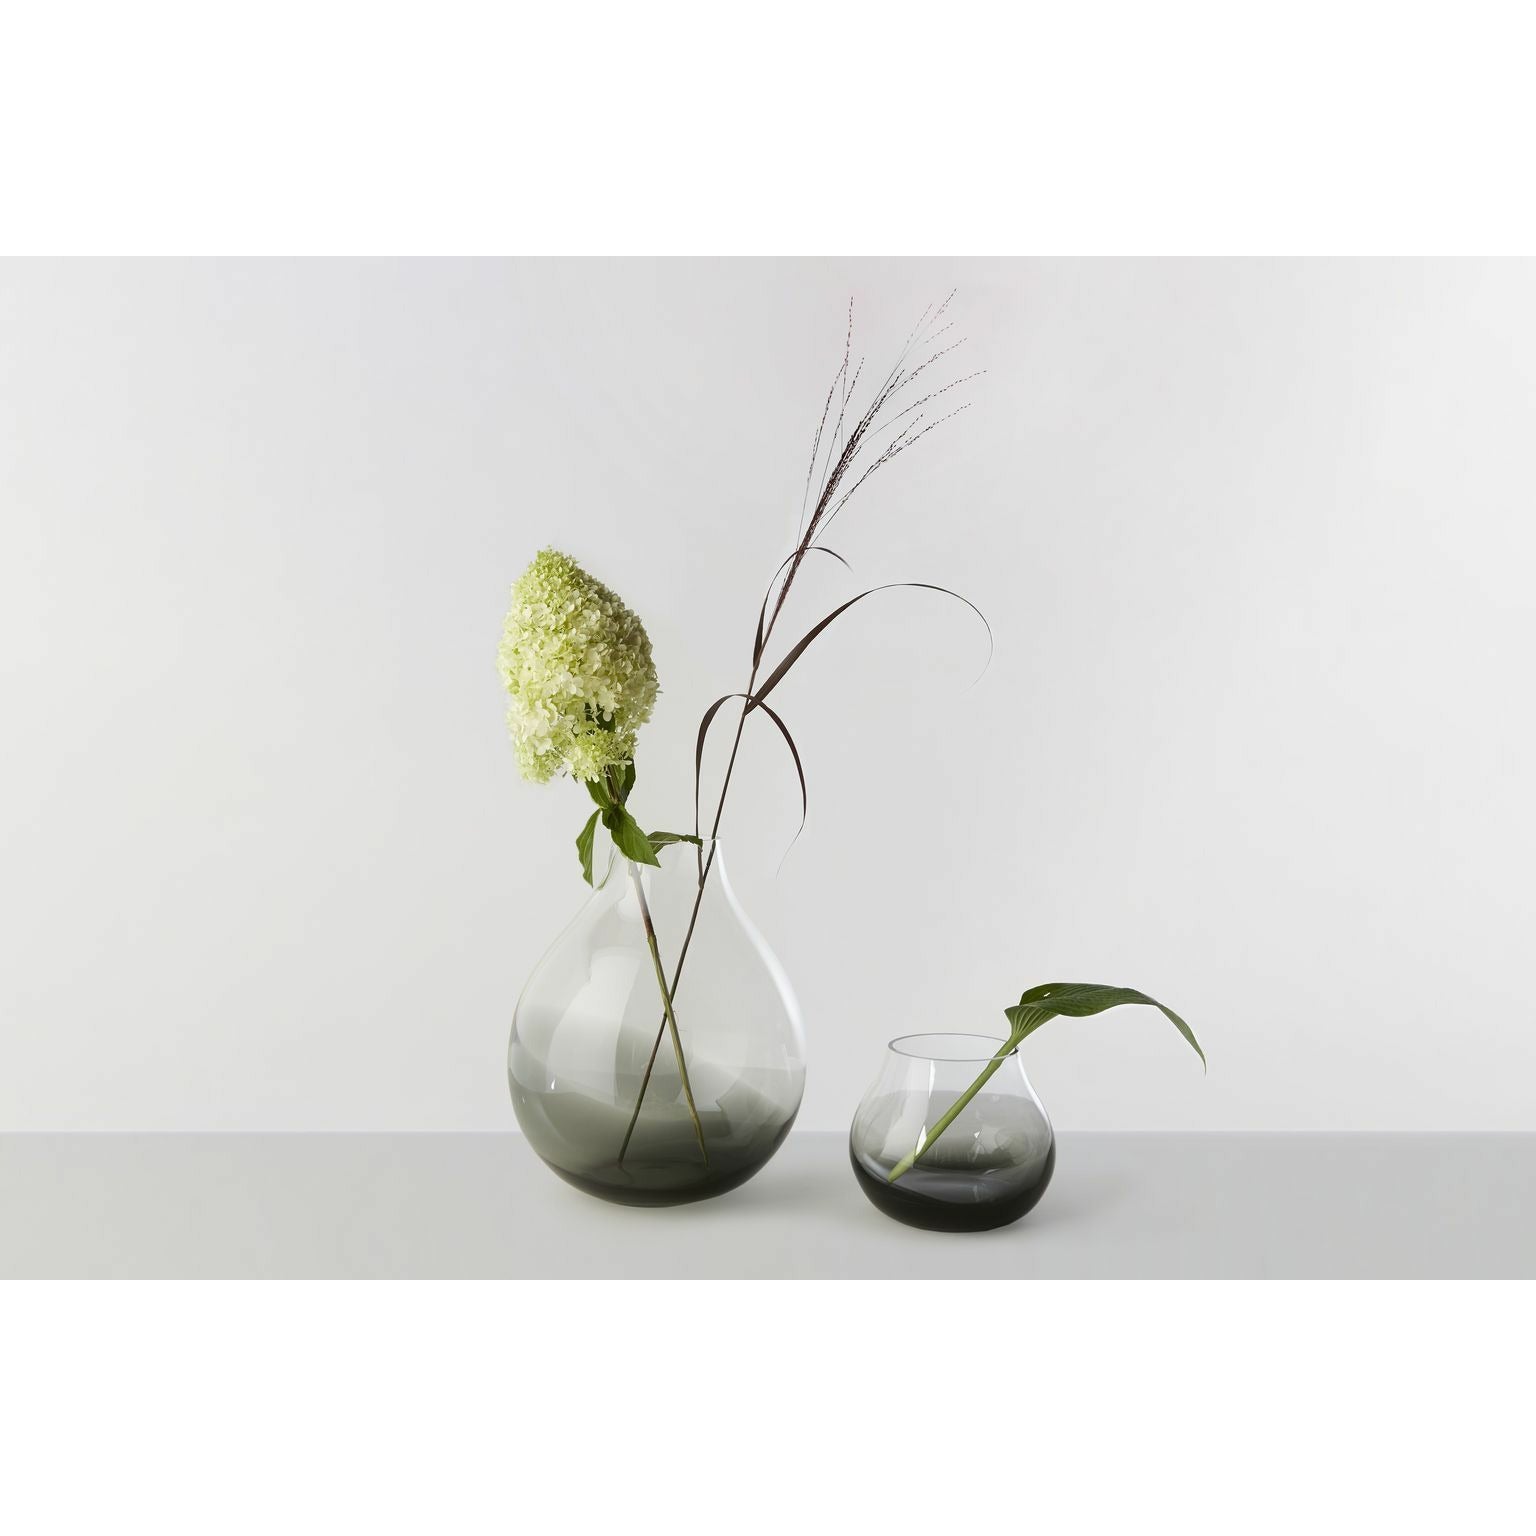 RO kolekce č. 23 Flower Vase, uzená šedá